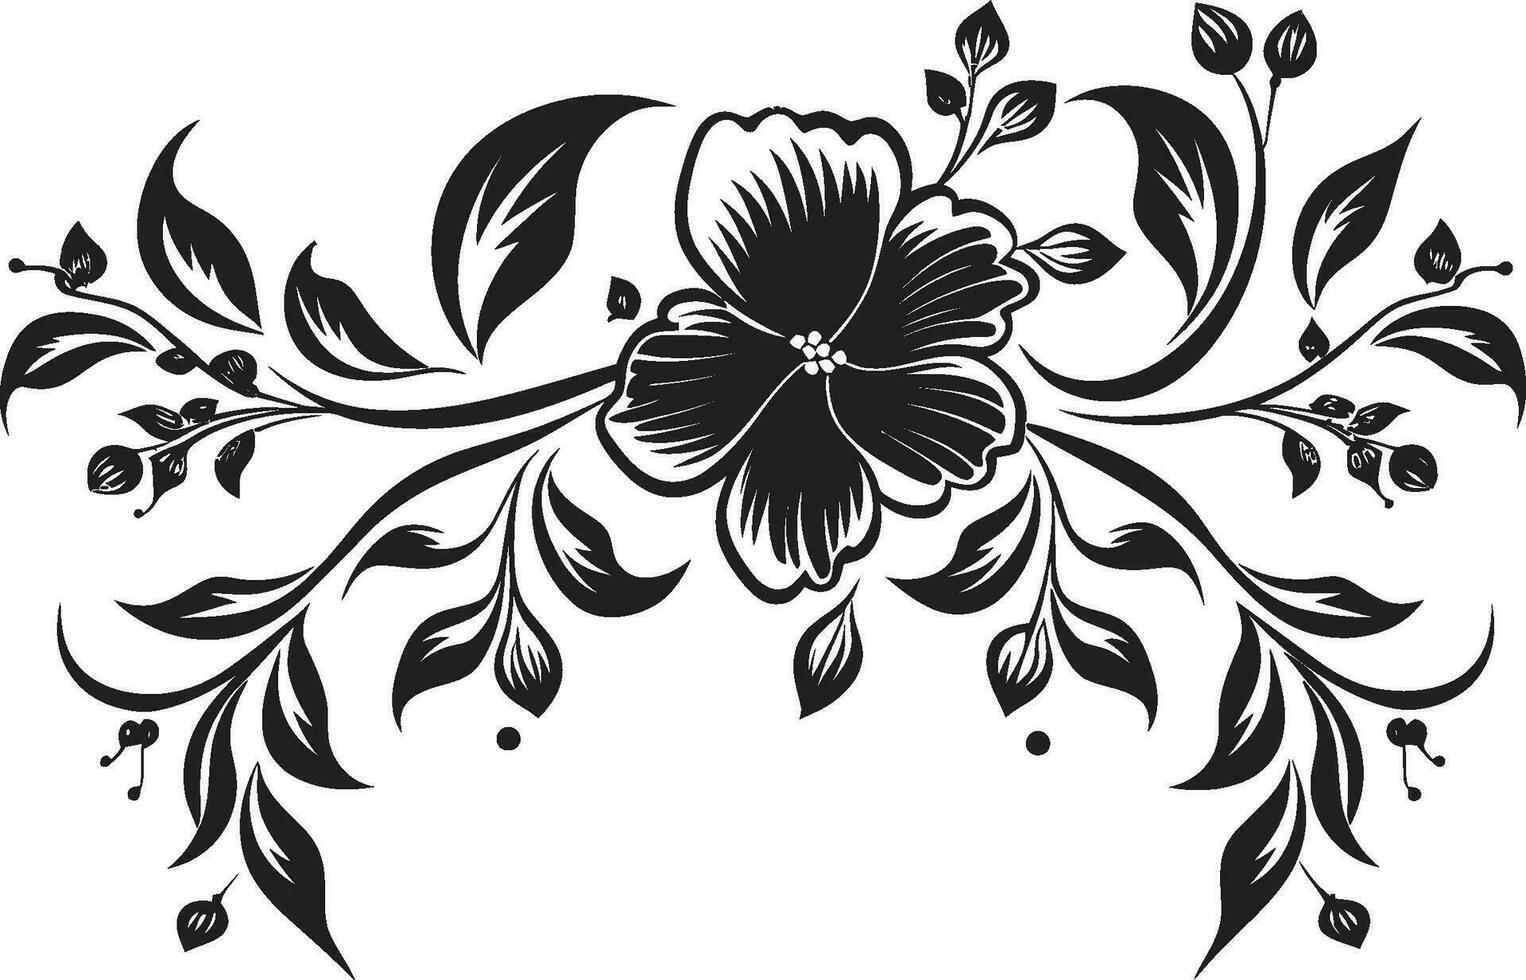 Elegant Floral Scrollwork Handcrafted Vector Blooms Vintage Inked Orchids Moody Black Emblem Sketches